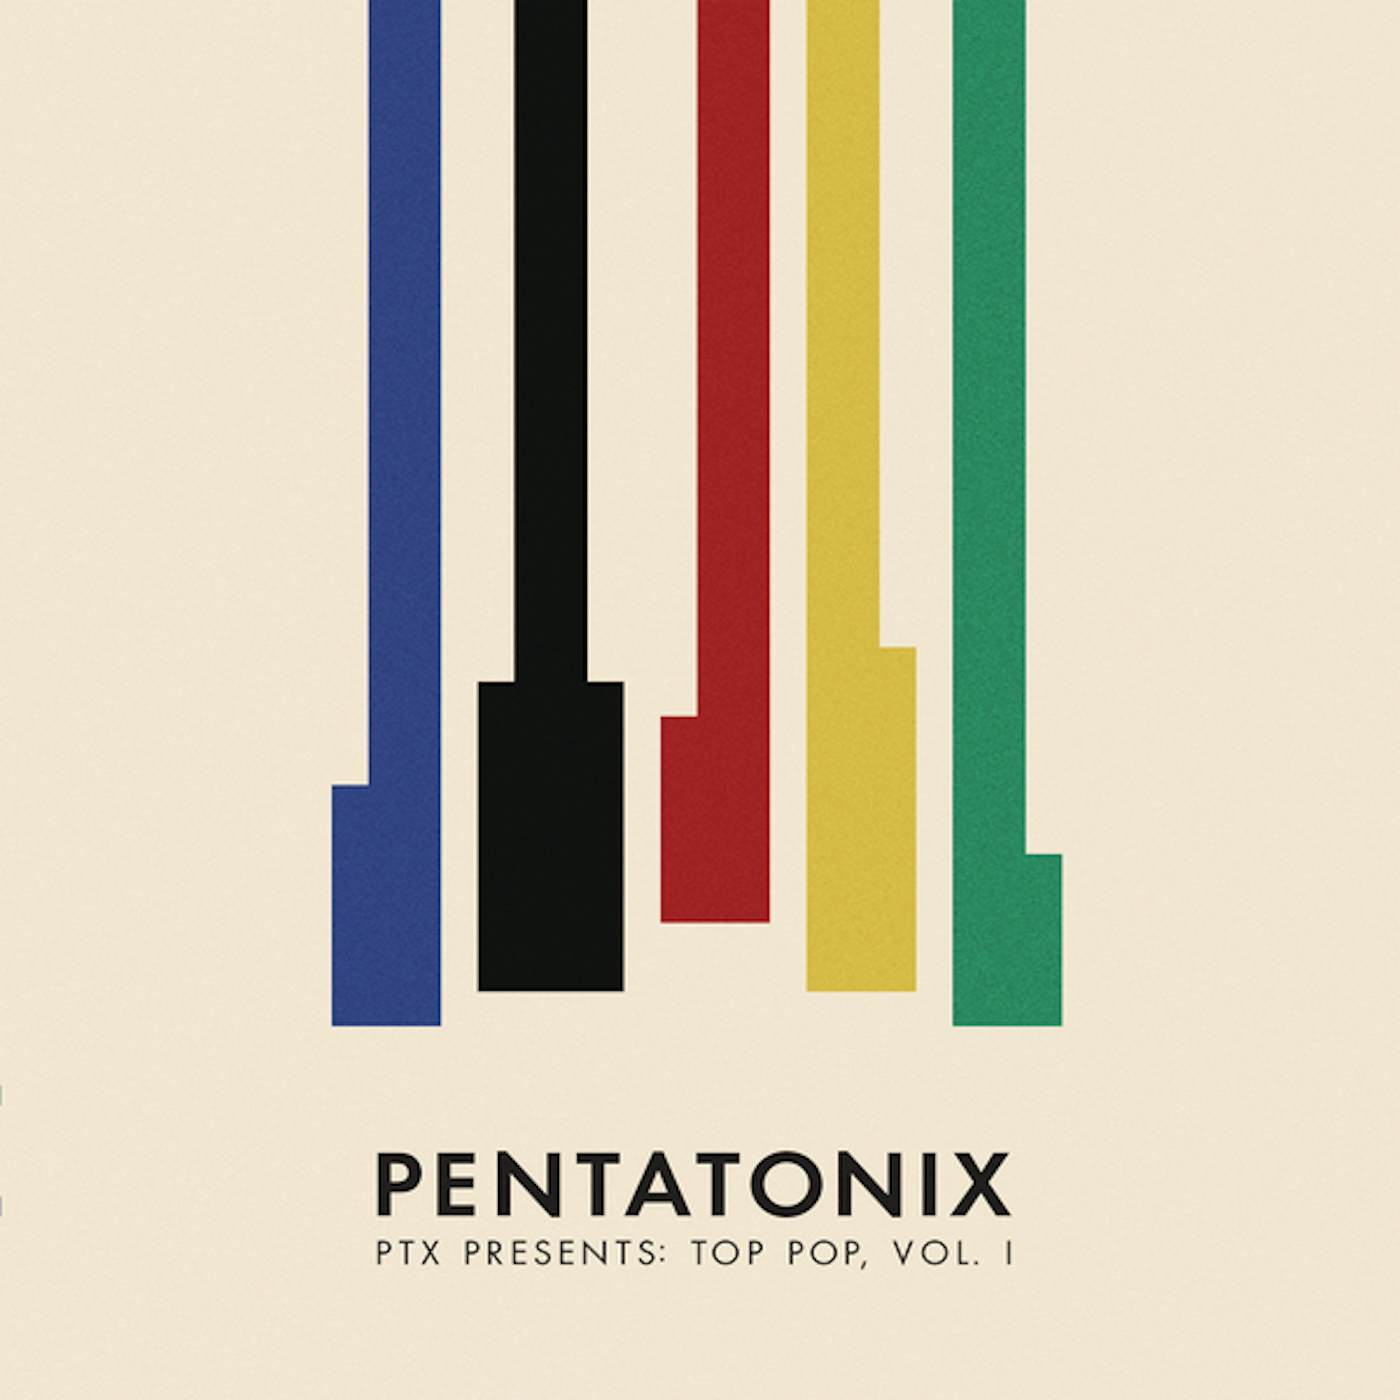 Pentatonix PTX PRESENTS: TOP POP, VOL. I (150G/DL CODE) Vinyl Record